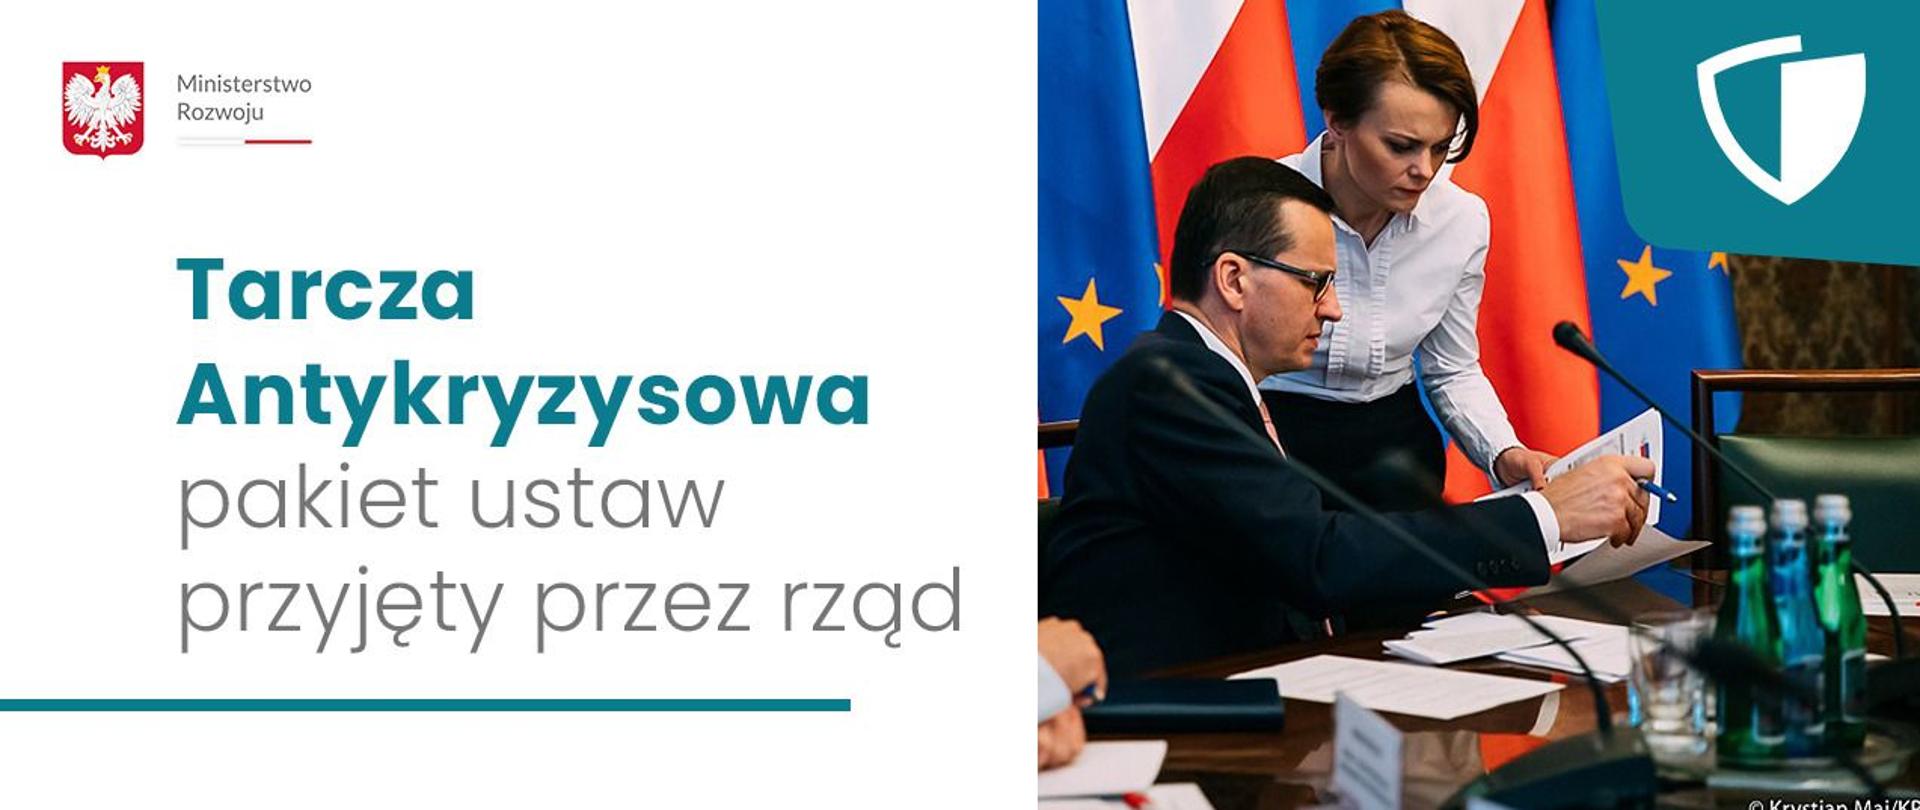 Po prawej stronie na zdjęciu premier Mateusz Morawiecki siedzi, obok stoi min. Jadwiga Emilewicz, spoglądają oboje na dokumenty